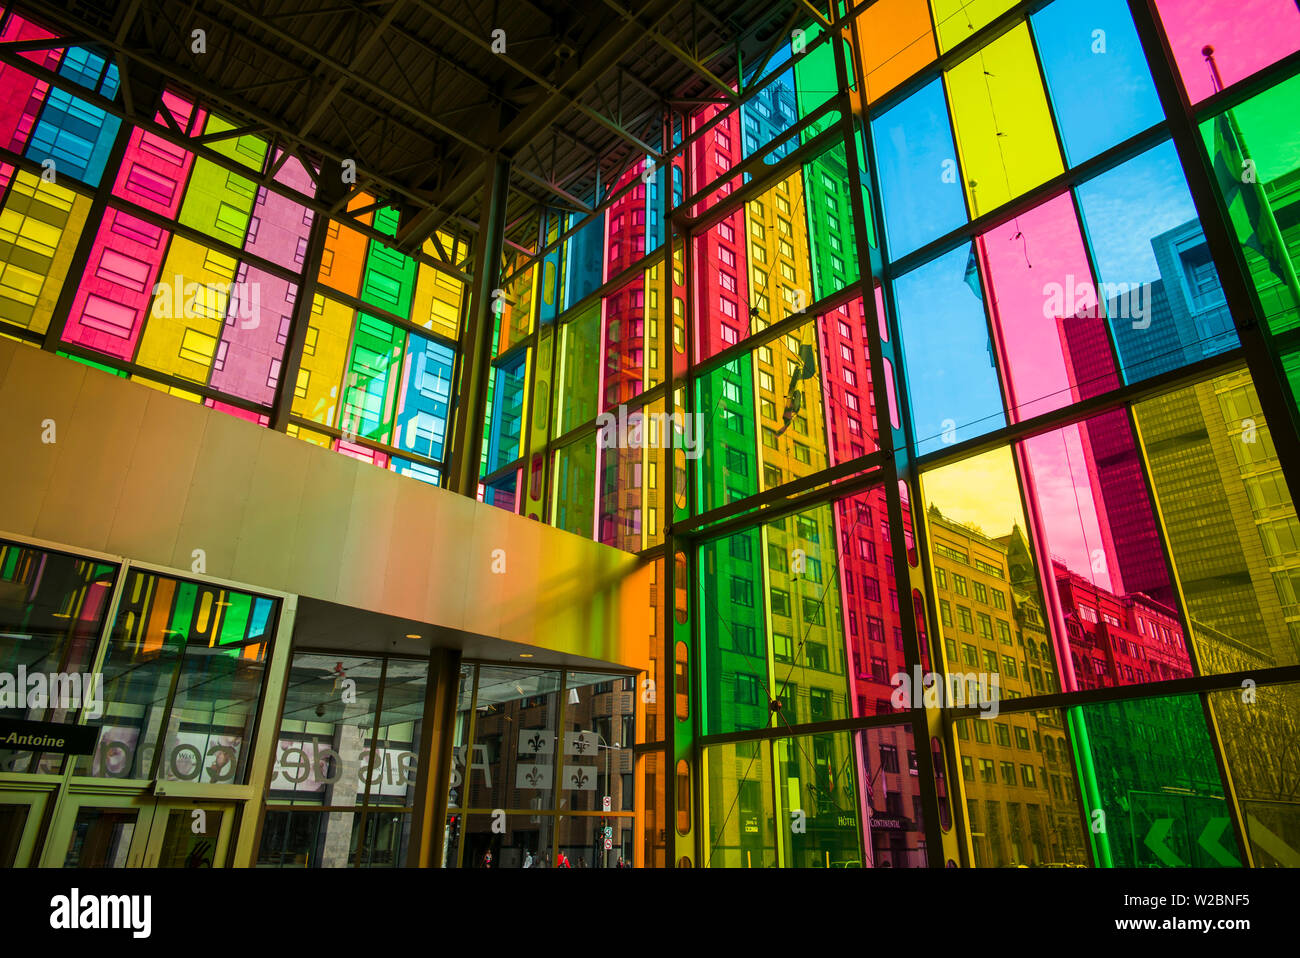 Canadá, Quebec, Montreal, Palais des Congres de Montreal, centro de convenciones, multi-ventanas de colores Foto de stock